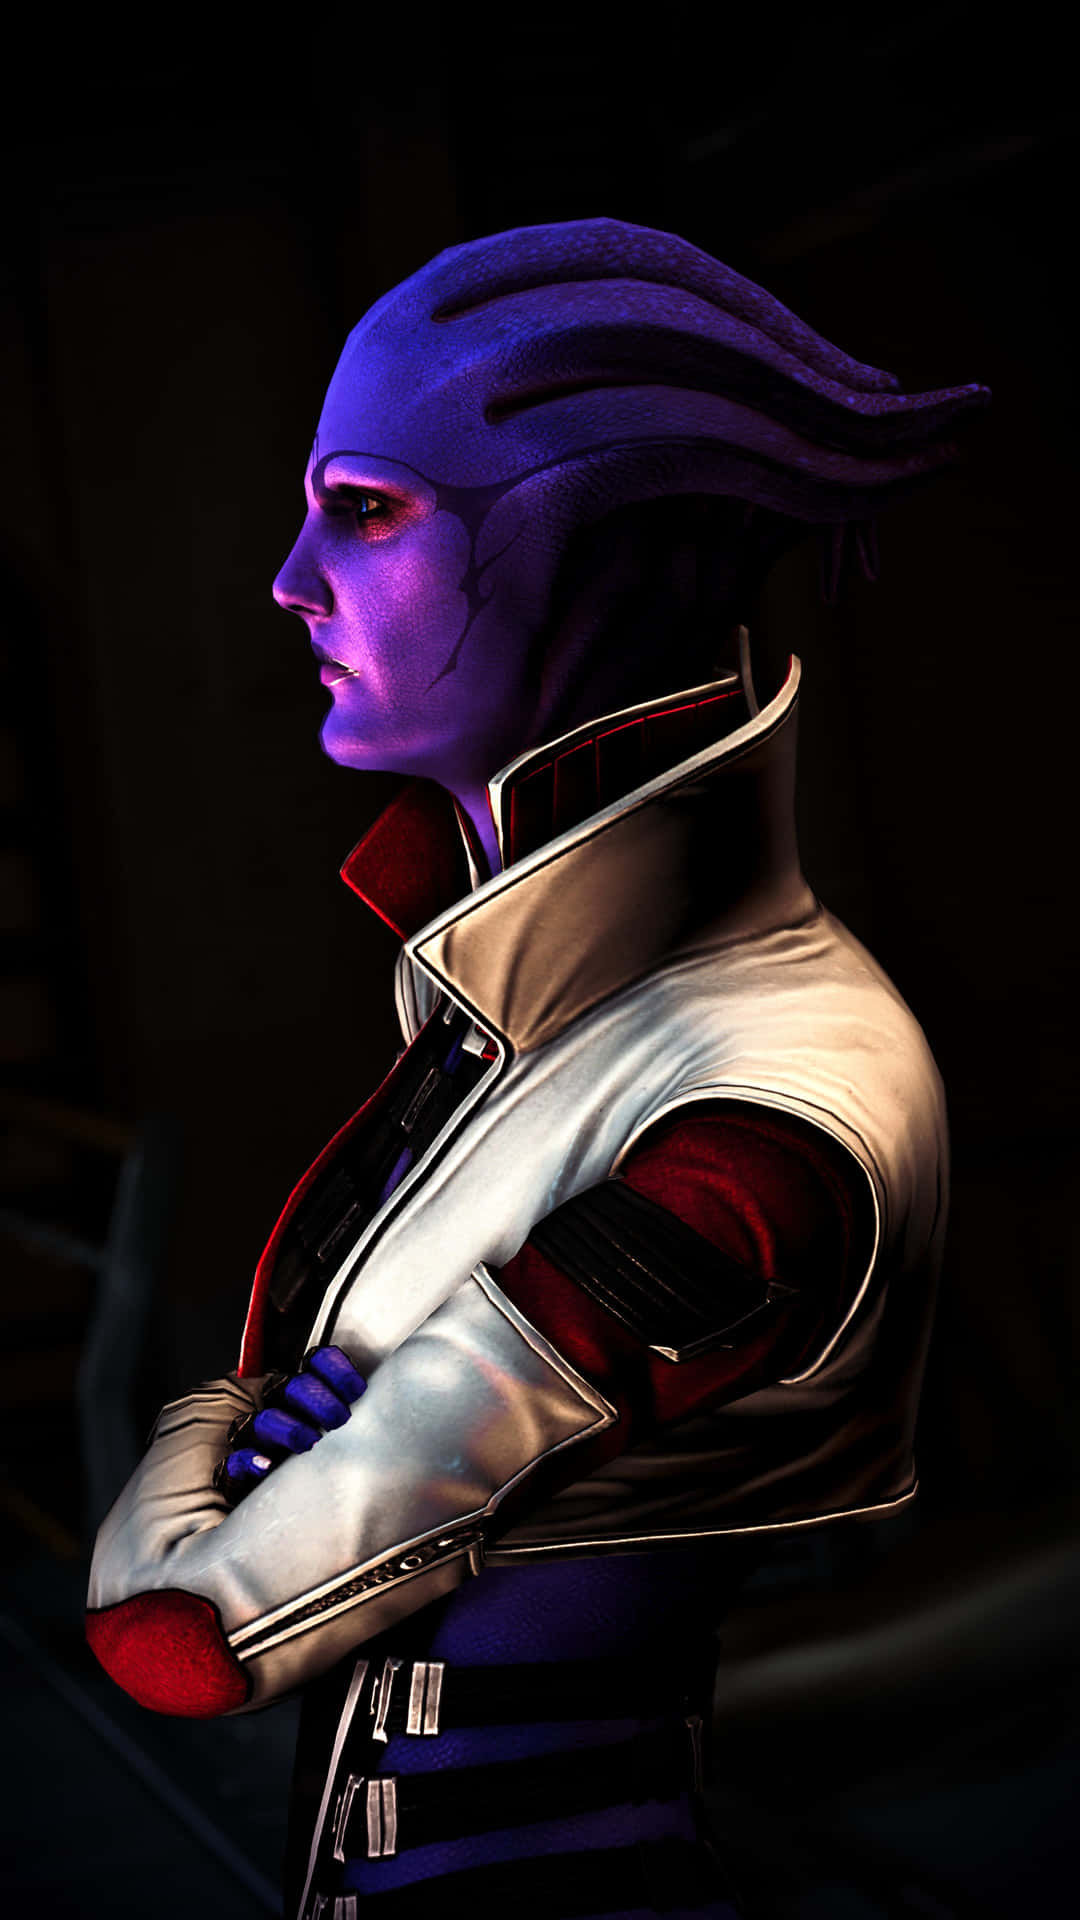 Ariat'loak, La Influyente Señora Del Crimen De Mass Effect, Posando Con Determinación. Fondo de pantalla